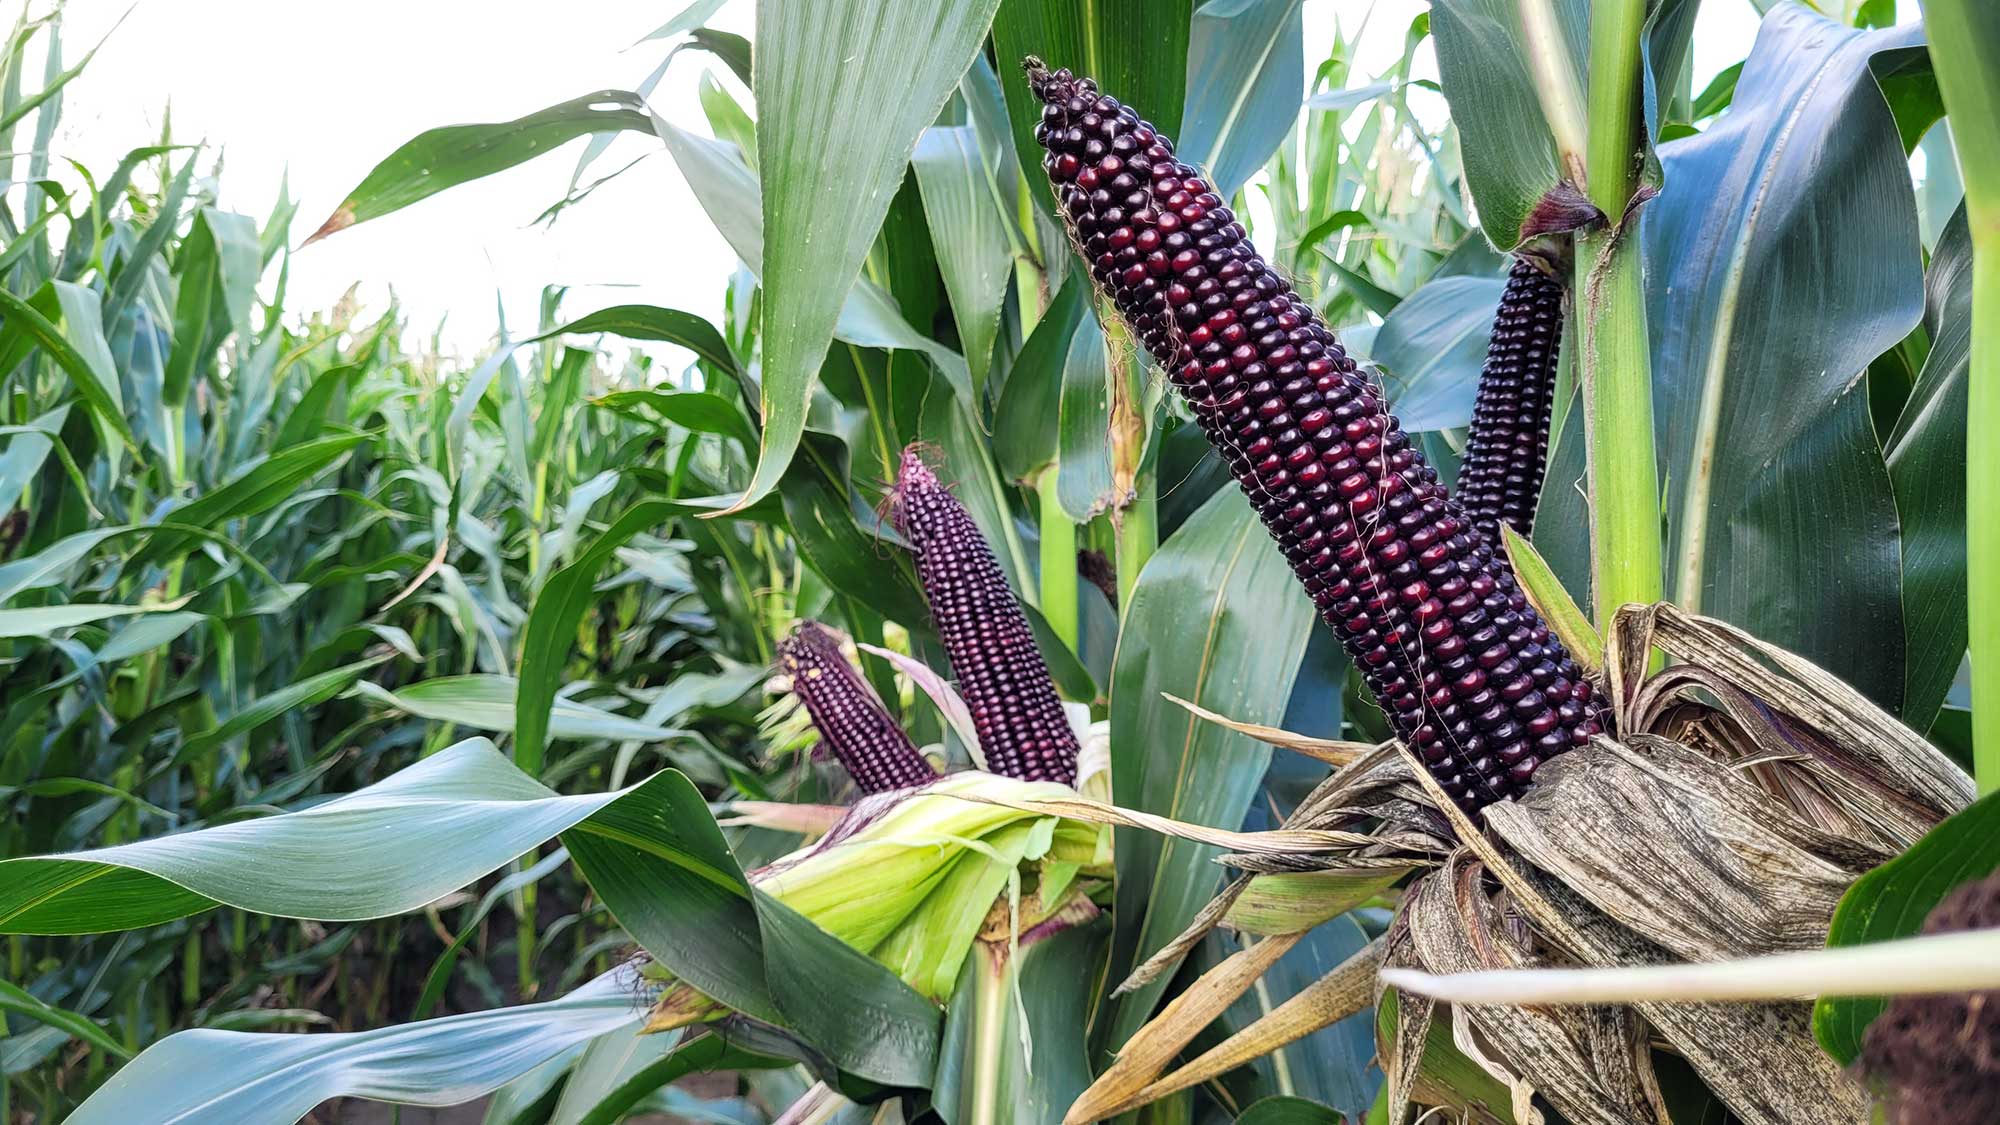 kukurydza_najnowsze trendy w uprawie